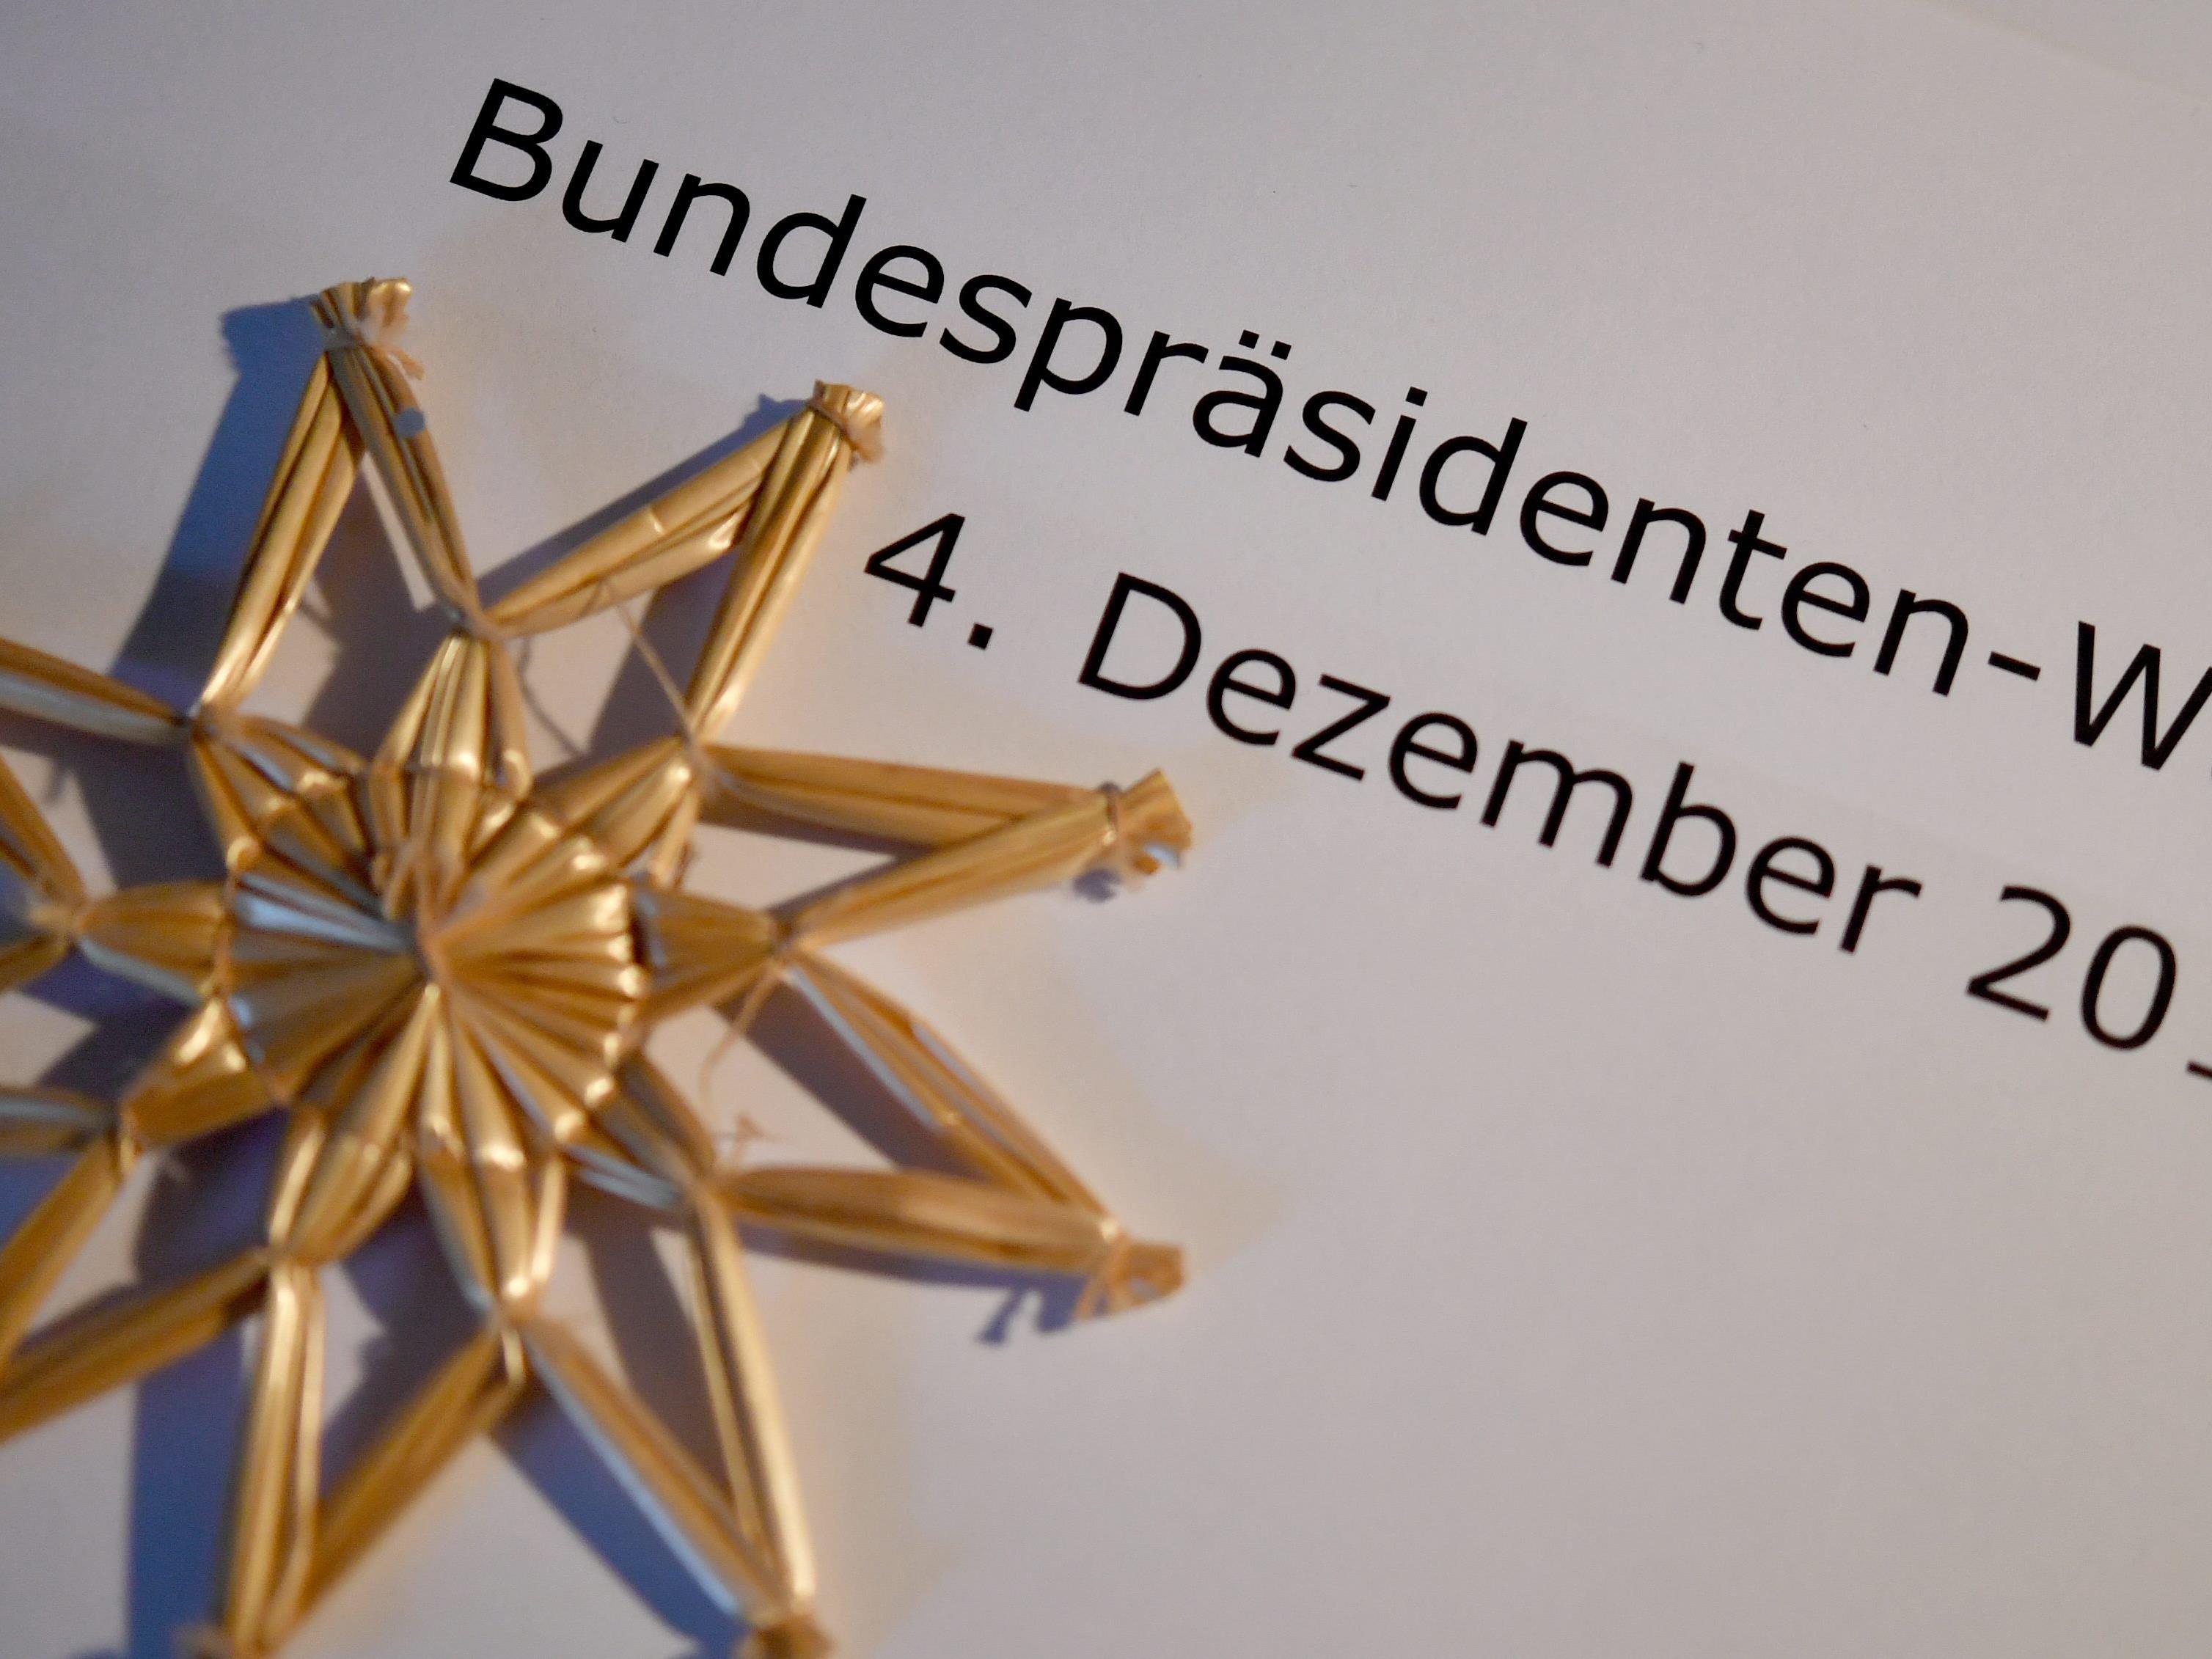 Bundespräsidentenwahl 2016: Die aktuelle Hochrechnung von der Stichwahl im Dezember.